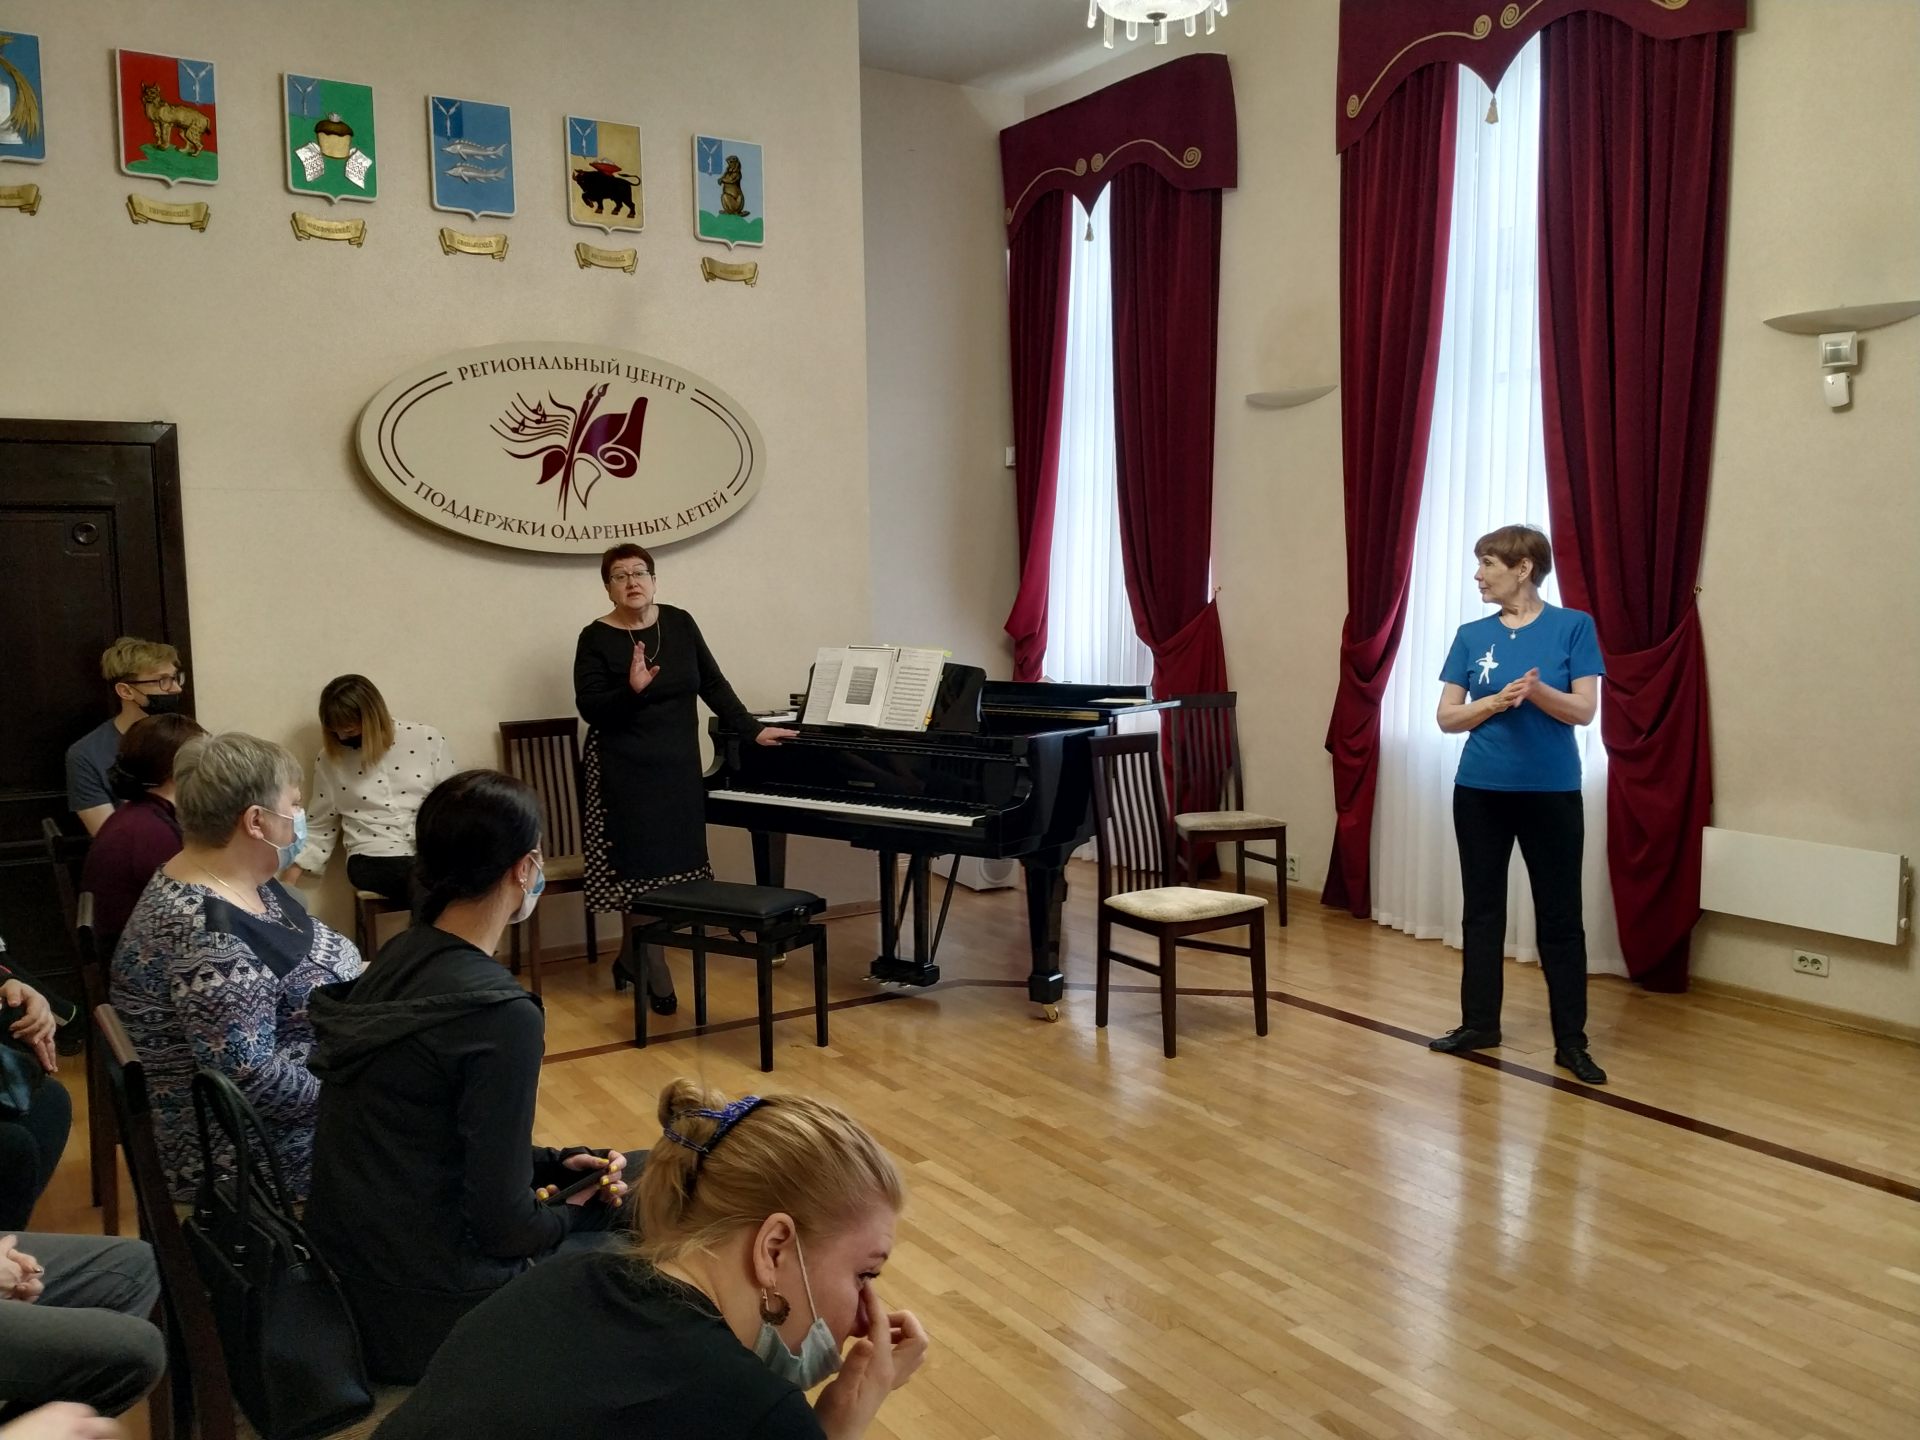 Впервые за долгое время, в стенах Саратовского областного учебно-методического центра состоялись очные занятия в рамках программы повышения квалификации «Инновационные методики в хореографическом образовании»